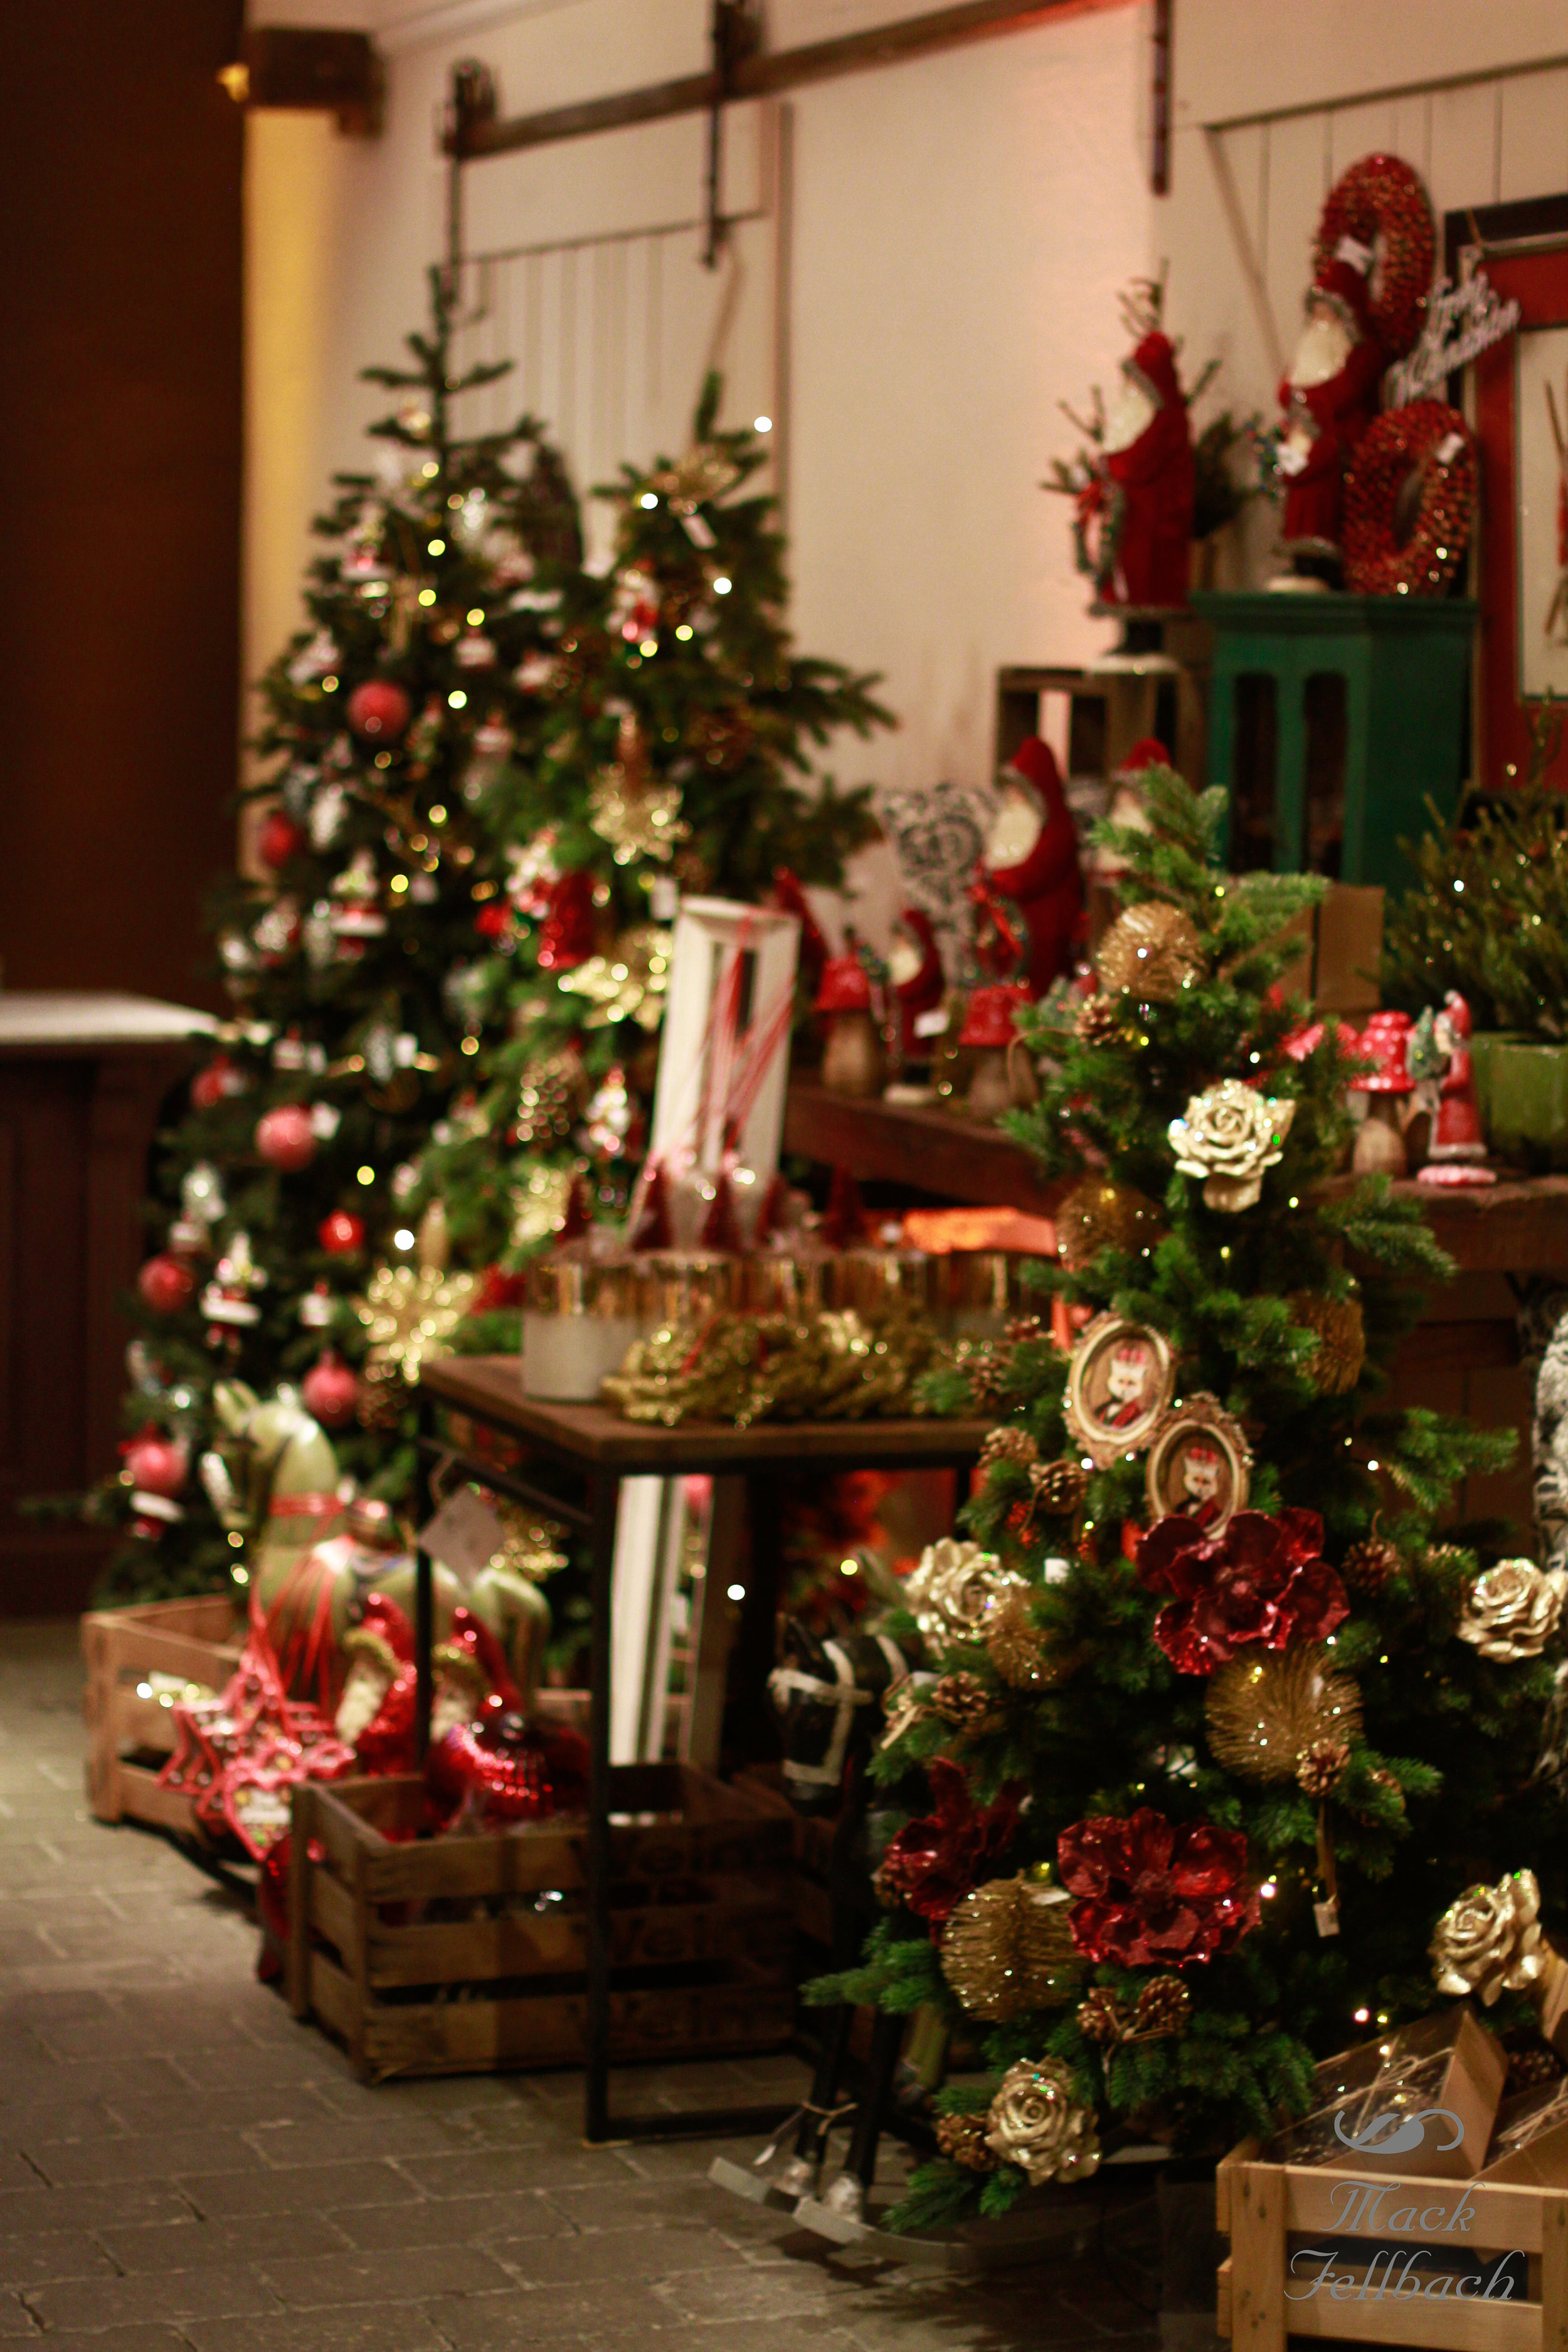 Weihnachten im Haus der guten Dinge. — Mack Fellbach